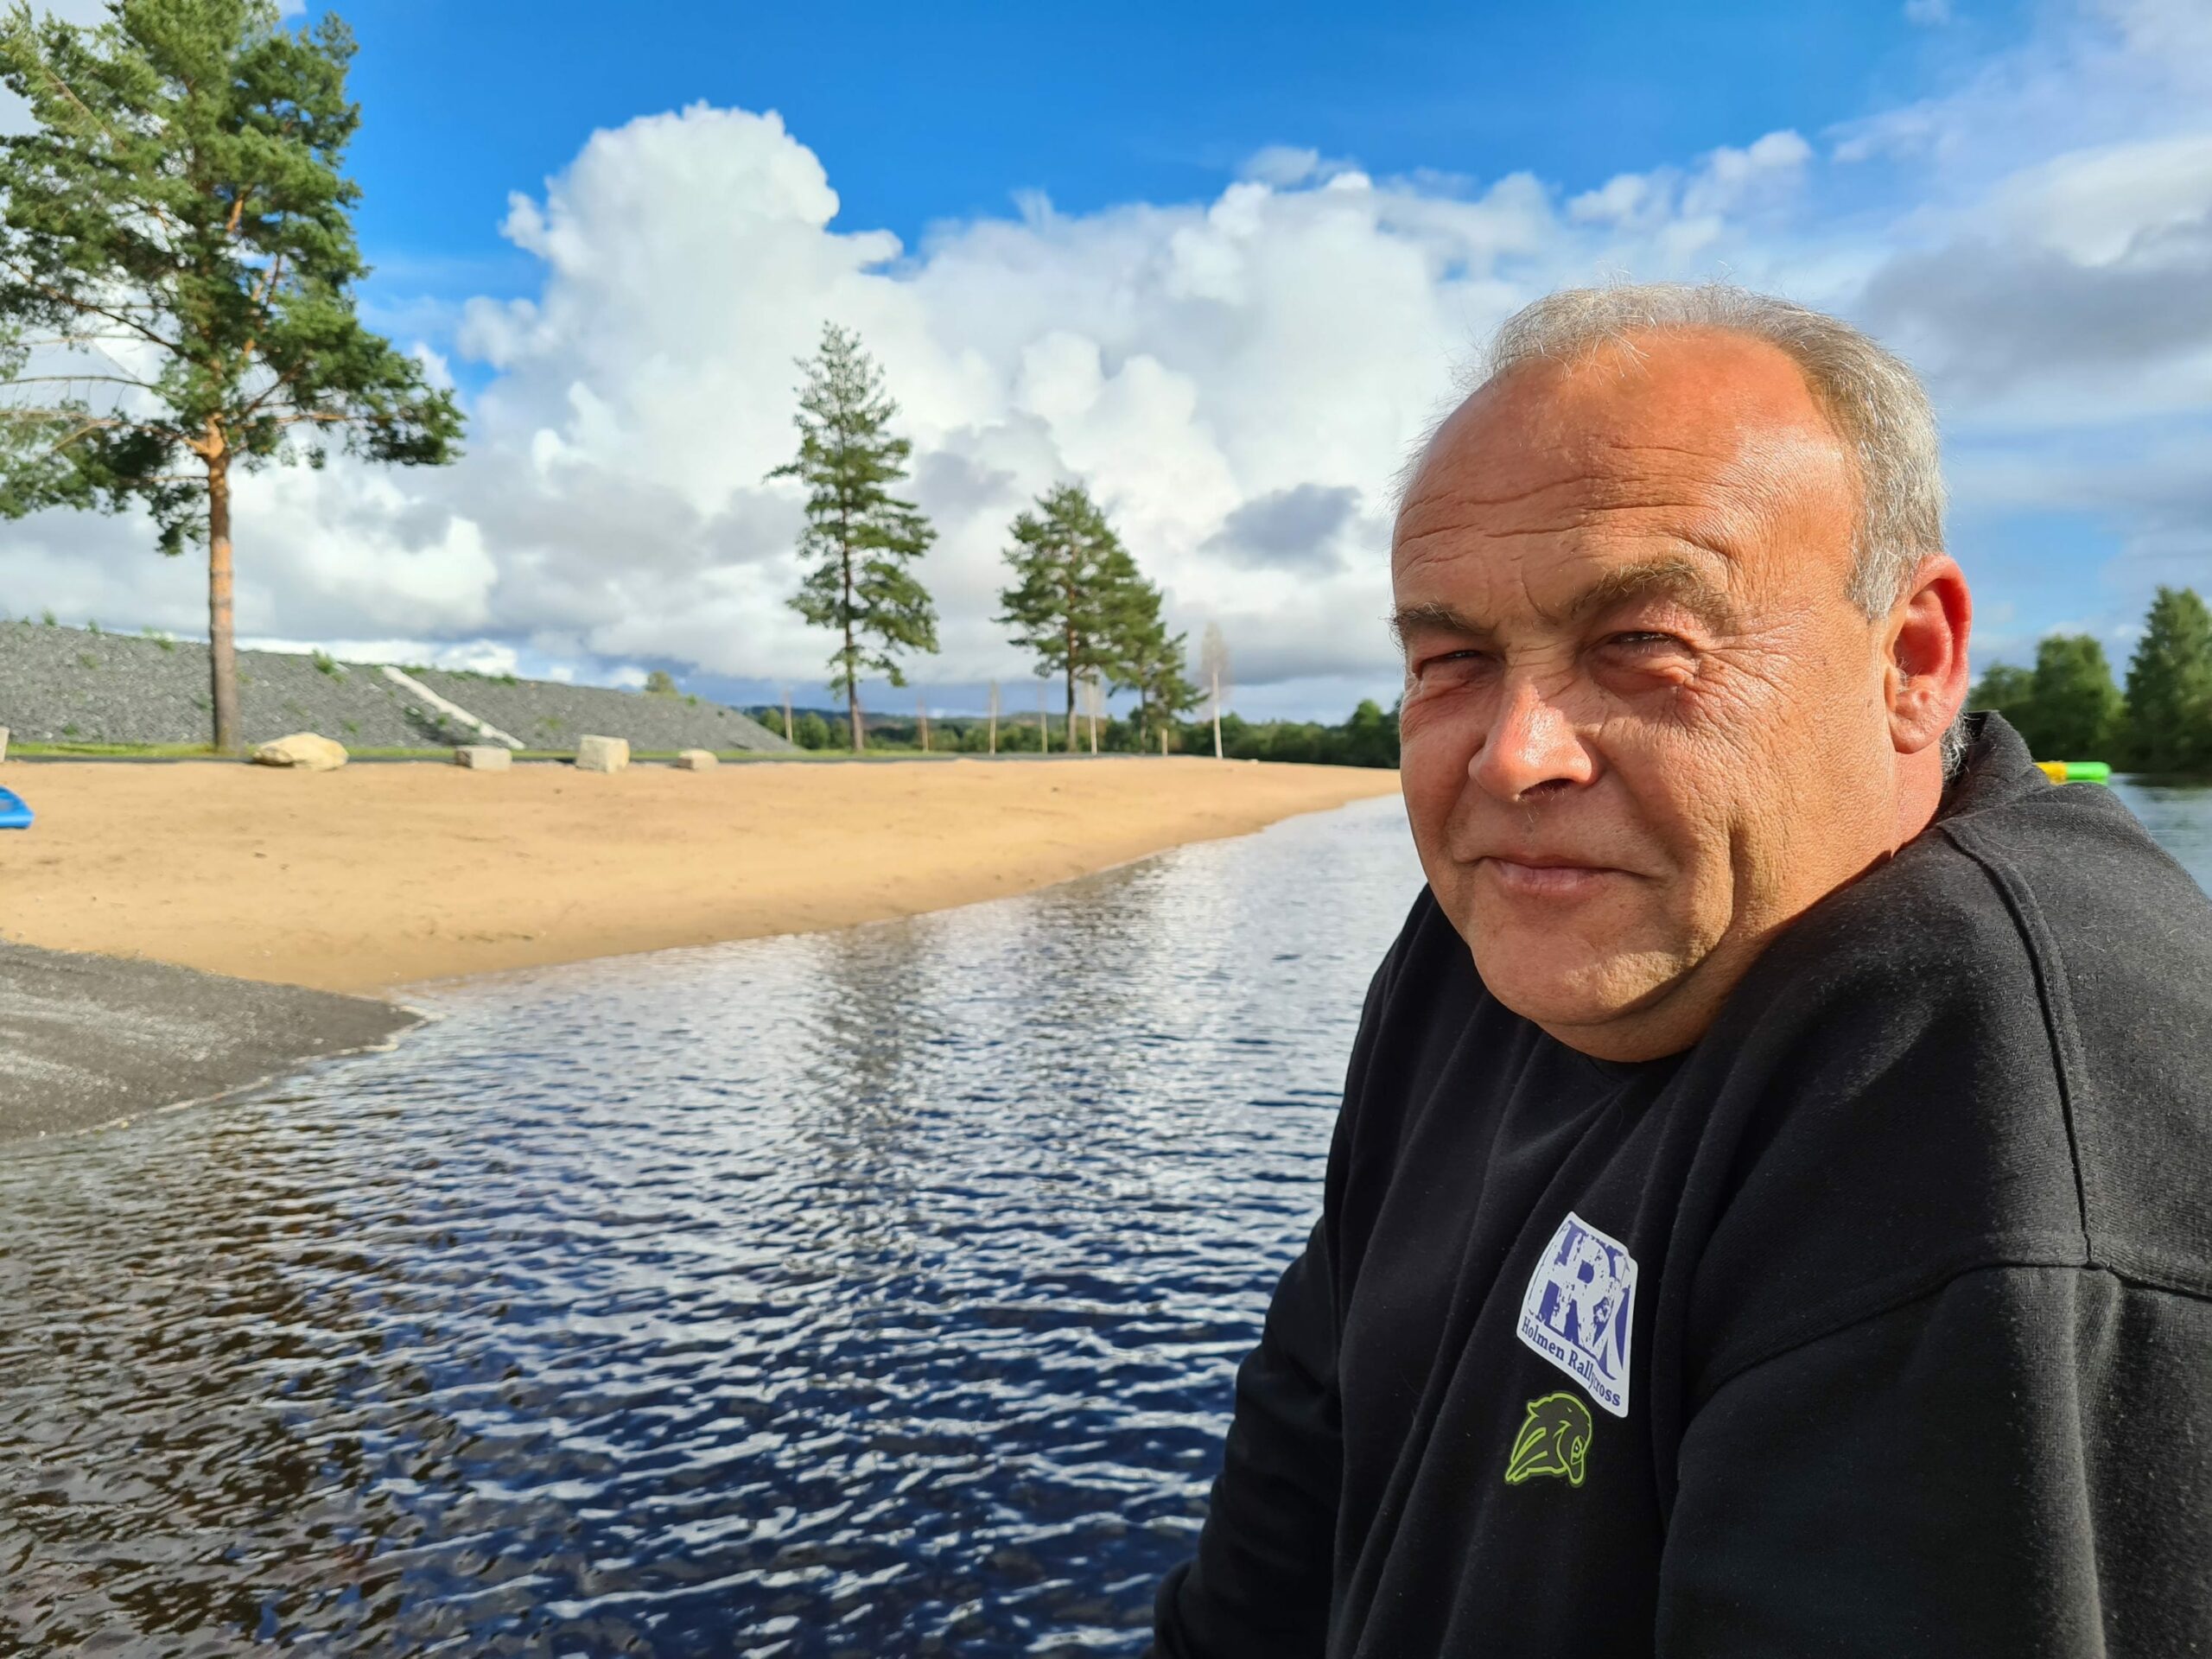 FÅR STØTTE: Over 580.000 kroner får Bård Holmen i støtte fra Åsnes nærings- og utviklingsfond for å ruste opp Færder camping. Plassen åpner for gjester offisielt neste år.